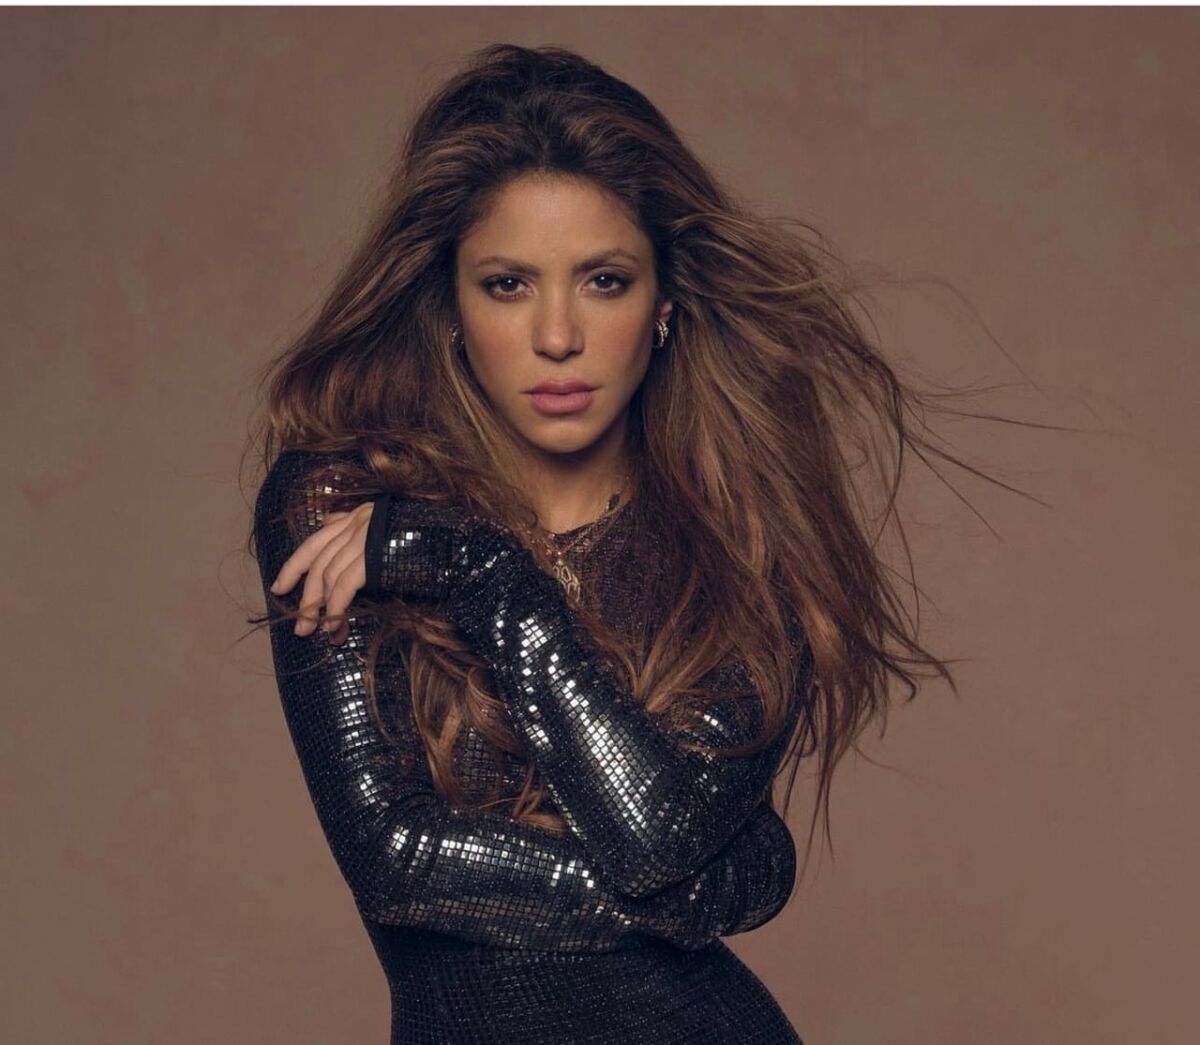 “Мы не виноваты”: Шакира посвятила песню экс-возлюбленному